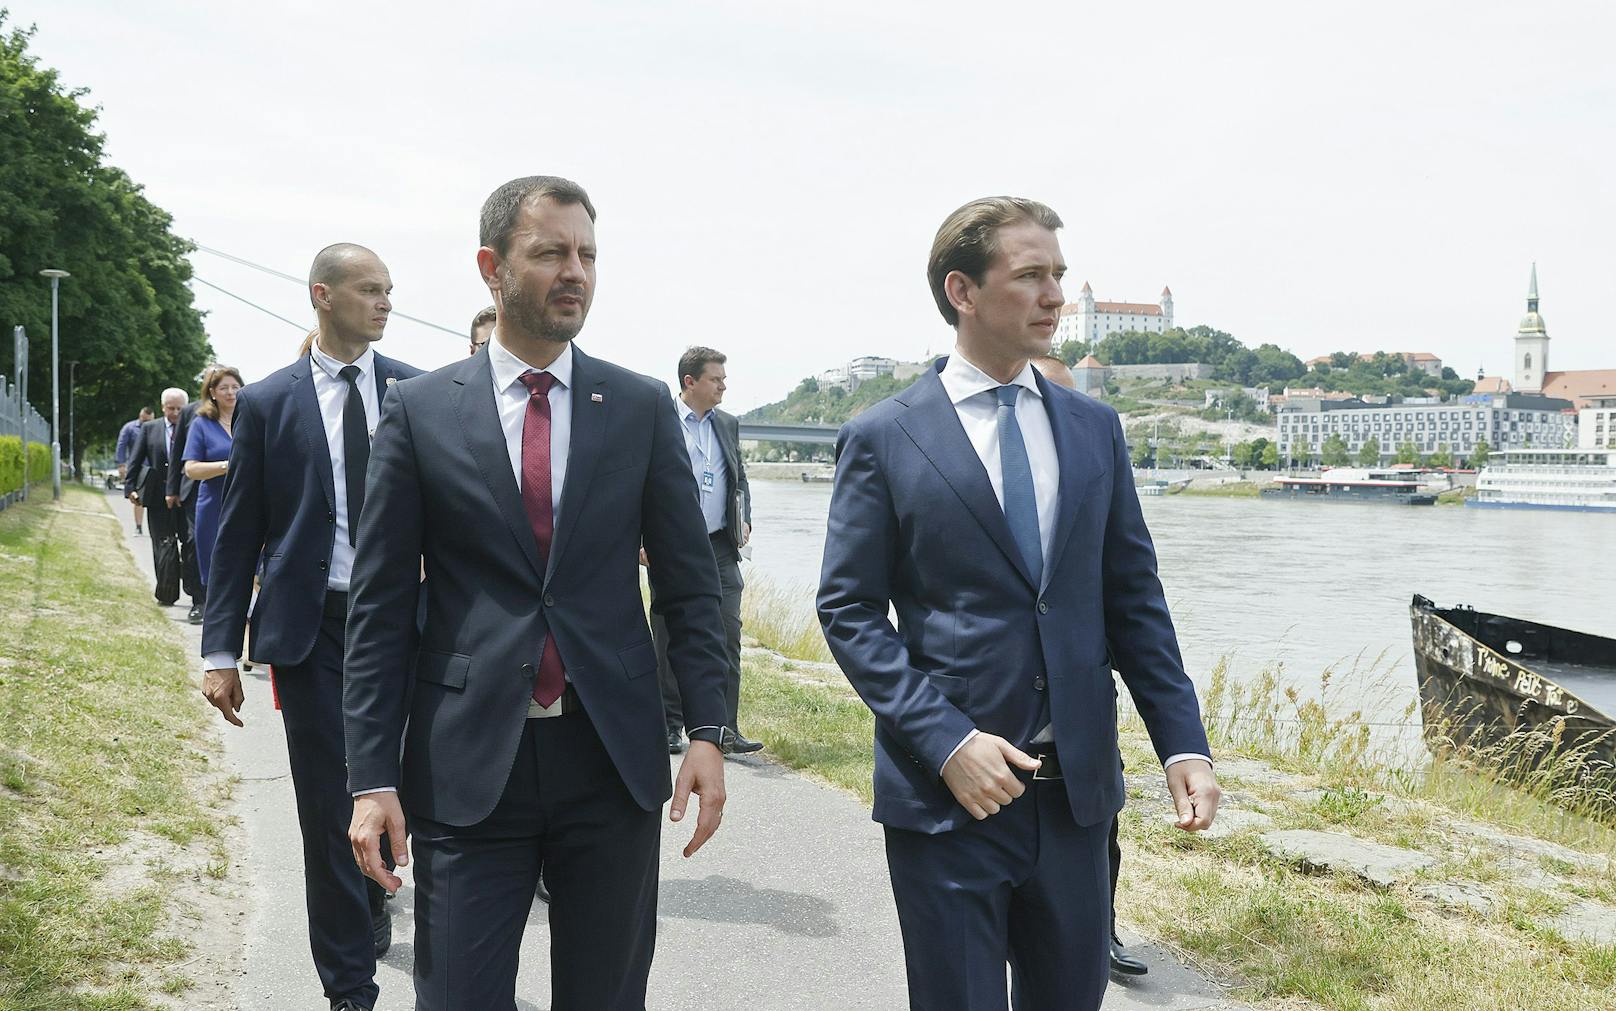 Kanzler Sebastian Kurz (ÖVP) traf am 15. Juni 2021 den slowakischen Regierungschef Eduard Heger zu einem Arbeitsgespräch in Bratislava.